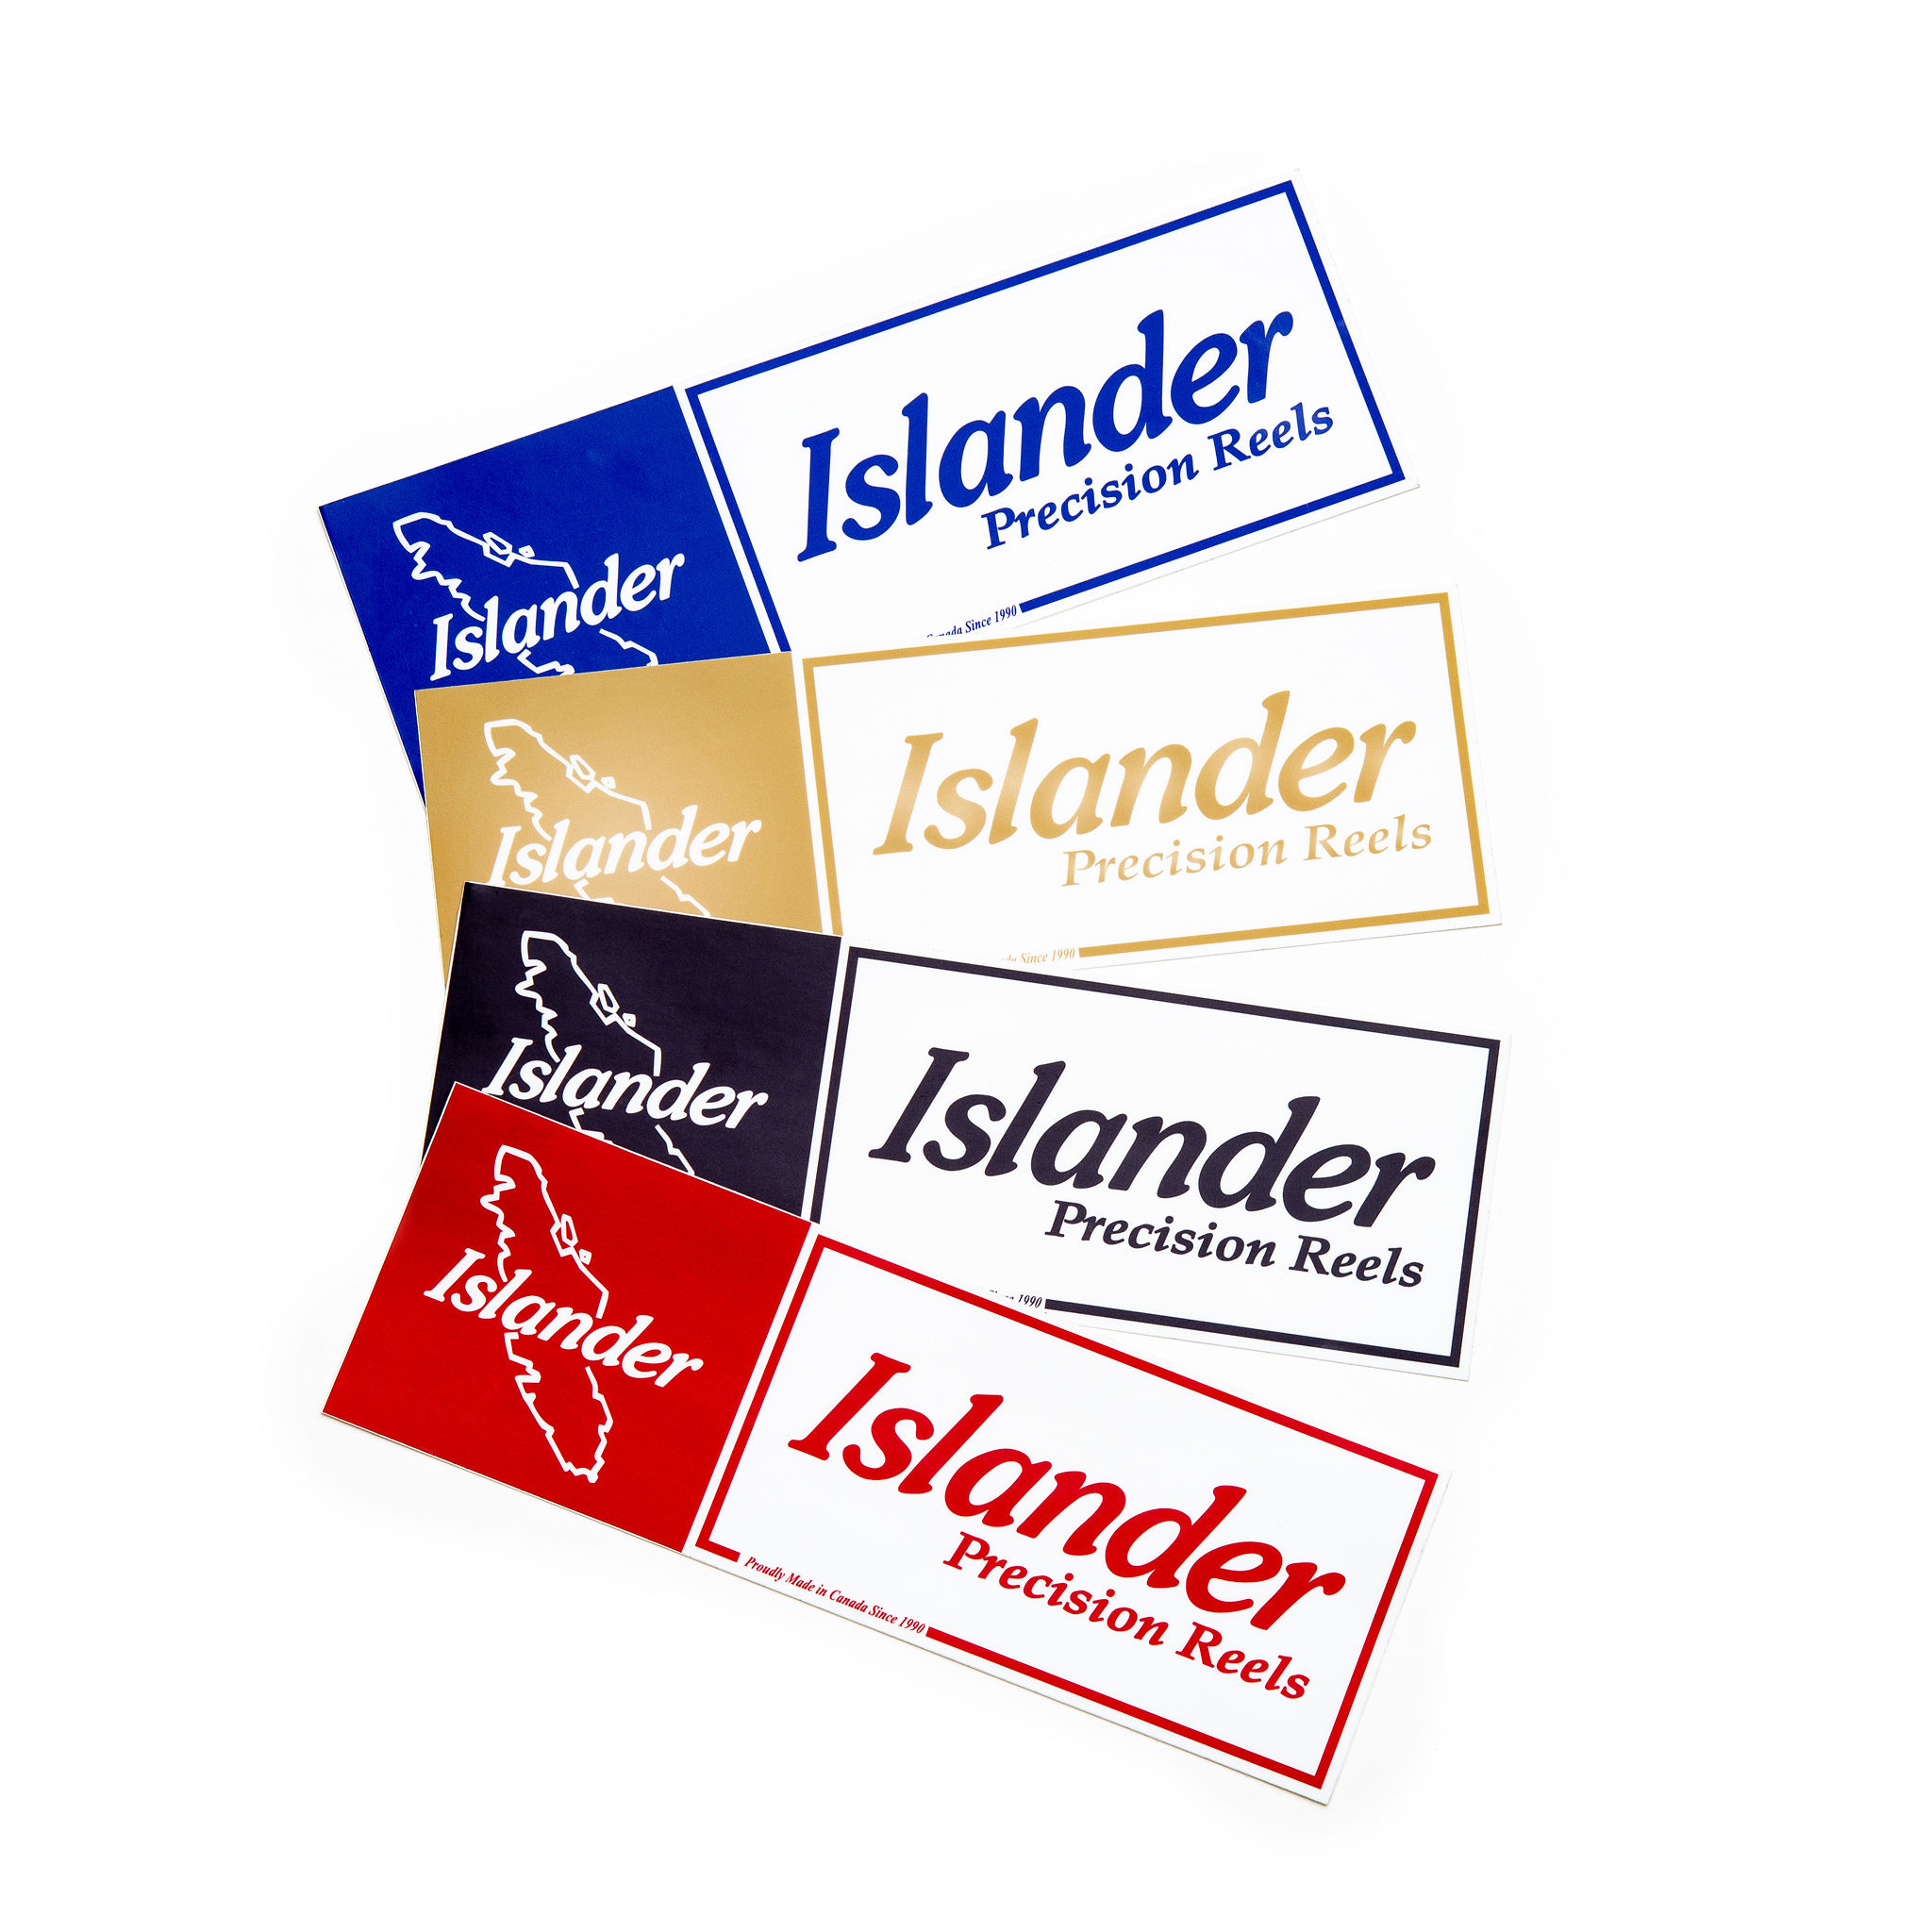 Islander Precision Reels (@islanderreels) • Instagram photos and videos